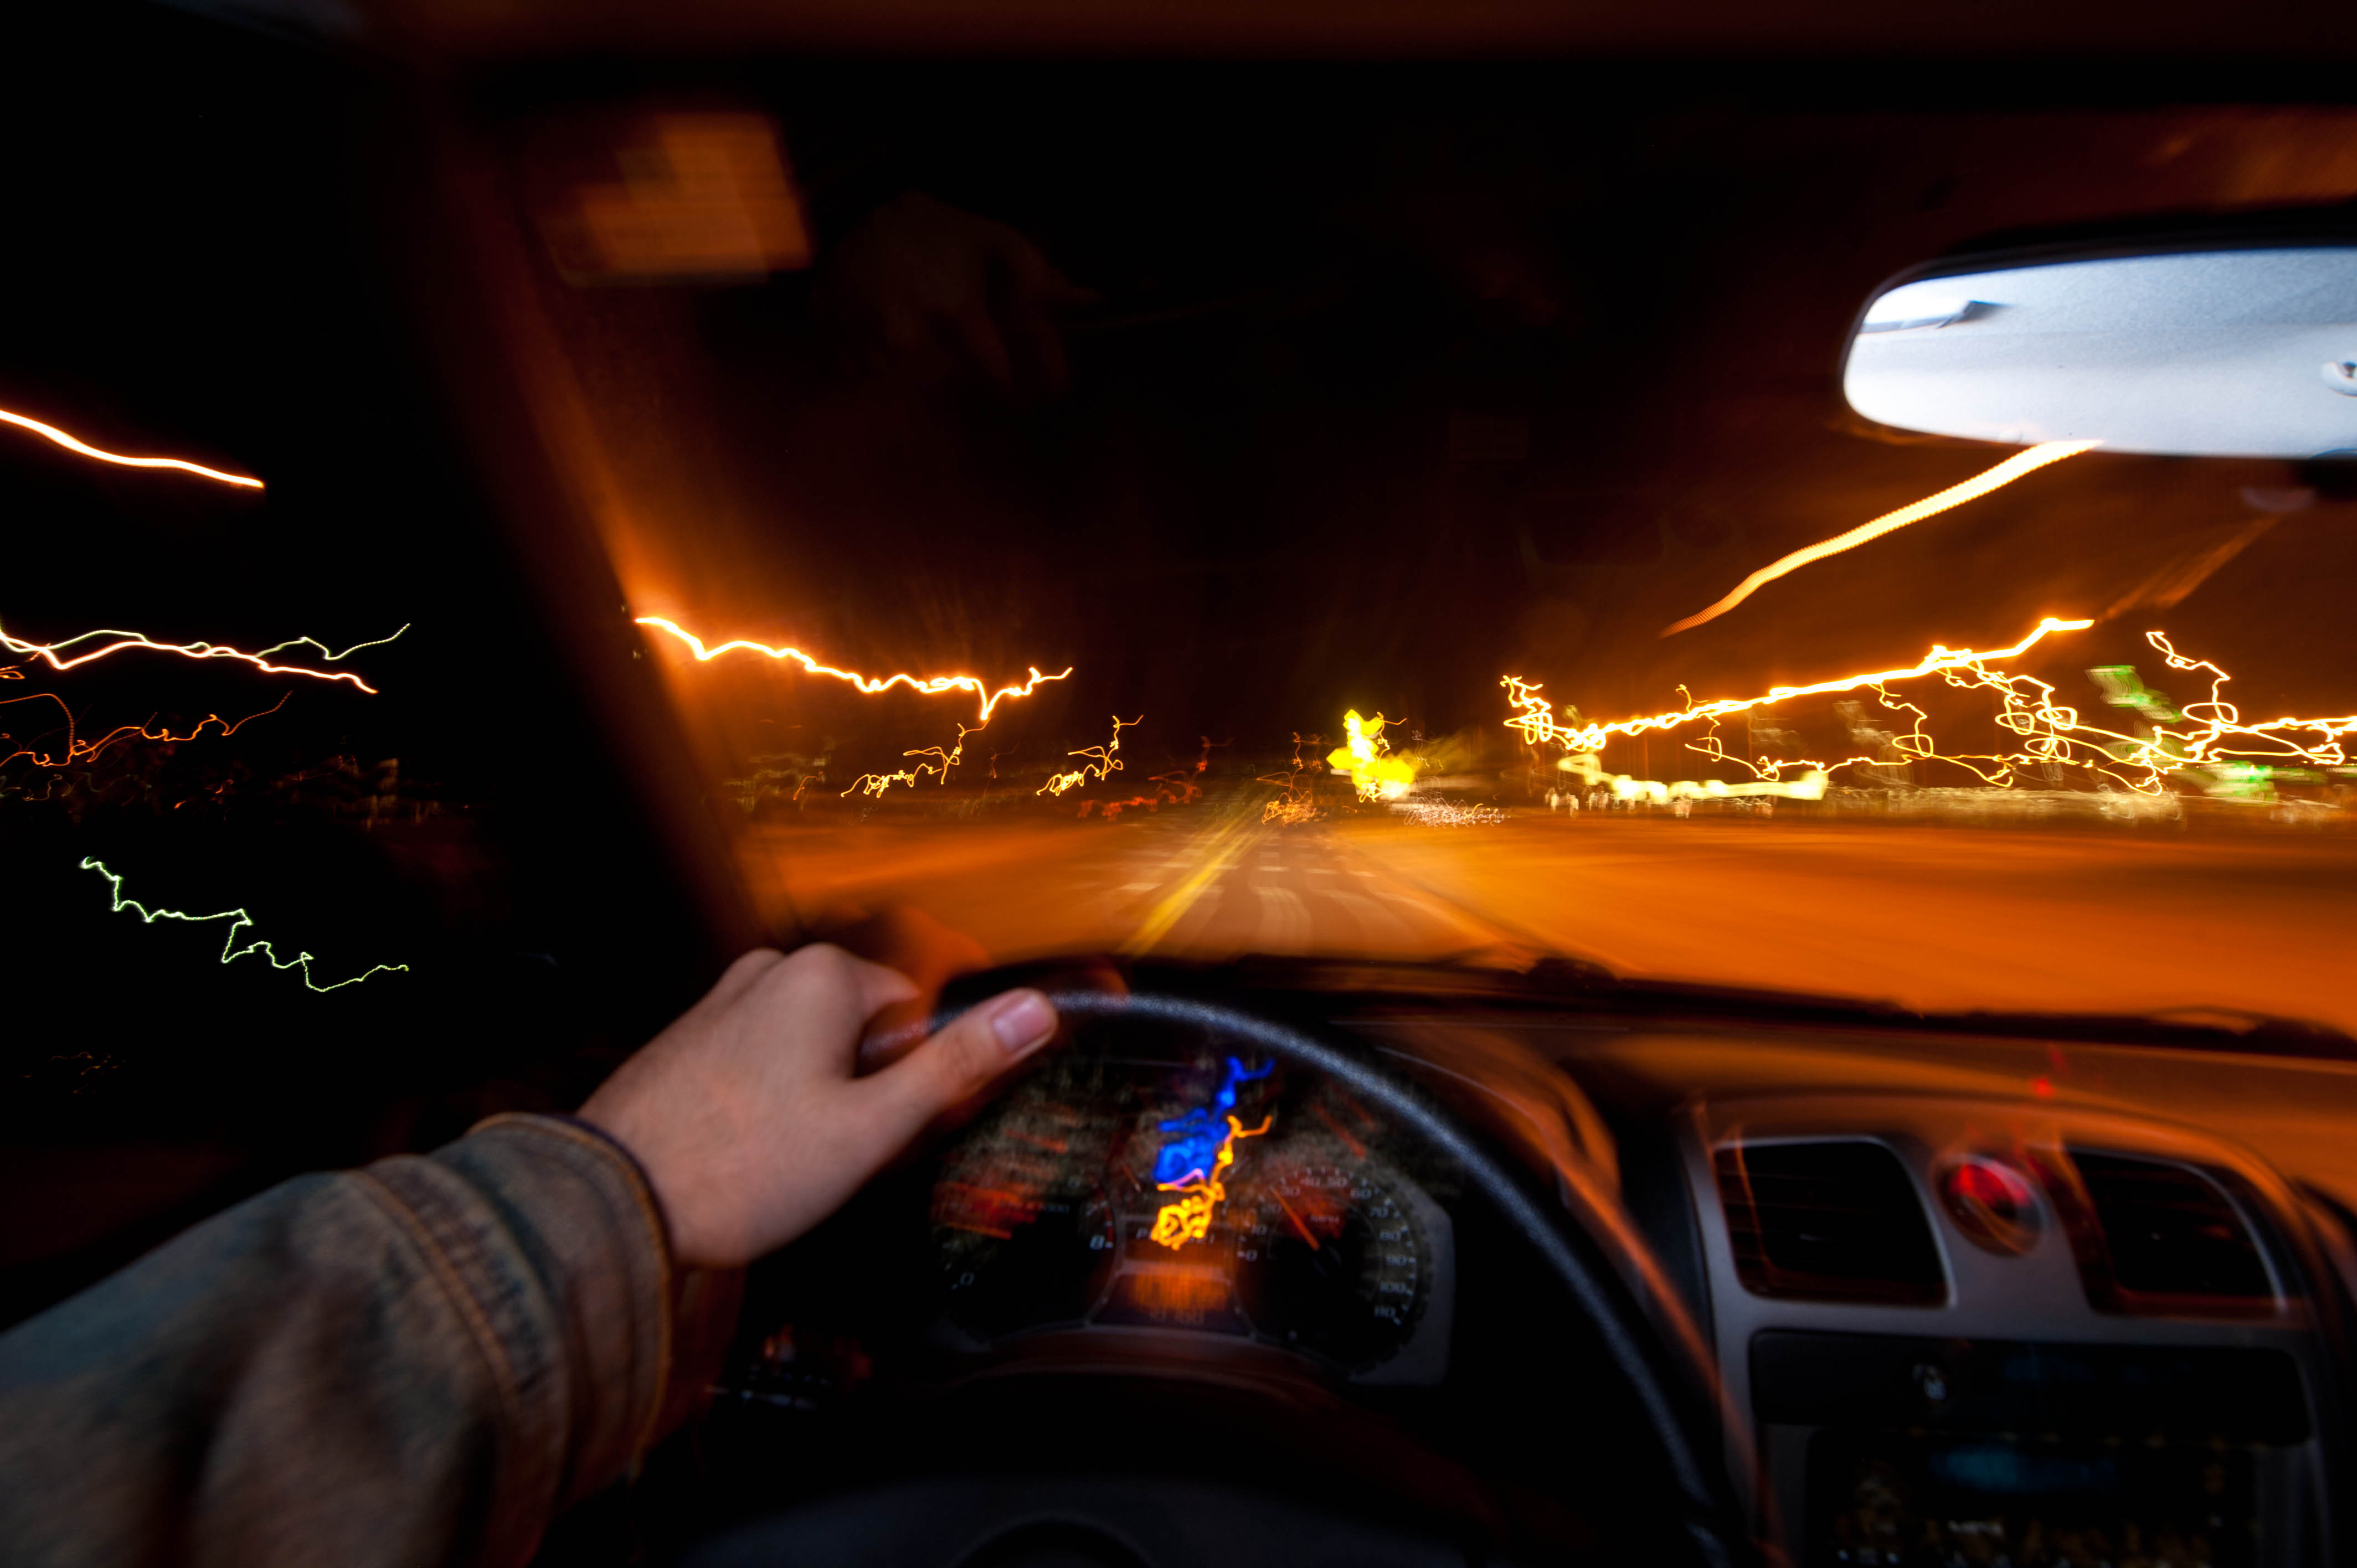 Картинка еду на машине. Машина на скорости. Машина ночью. За рулем машины ночью. Ночь дорога авто.